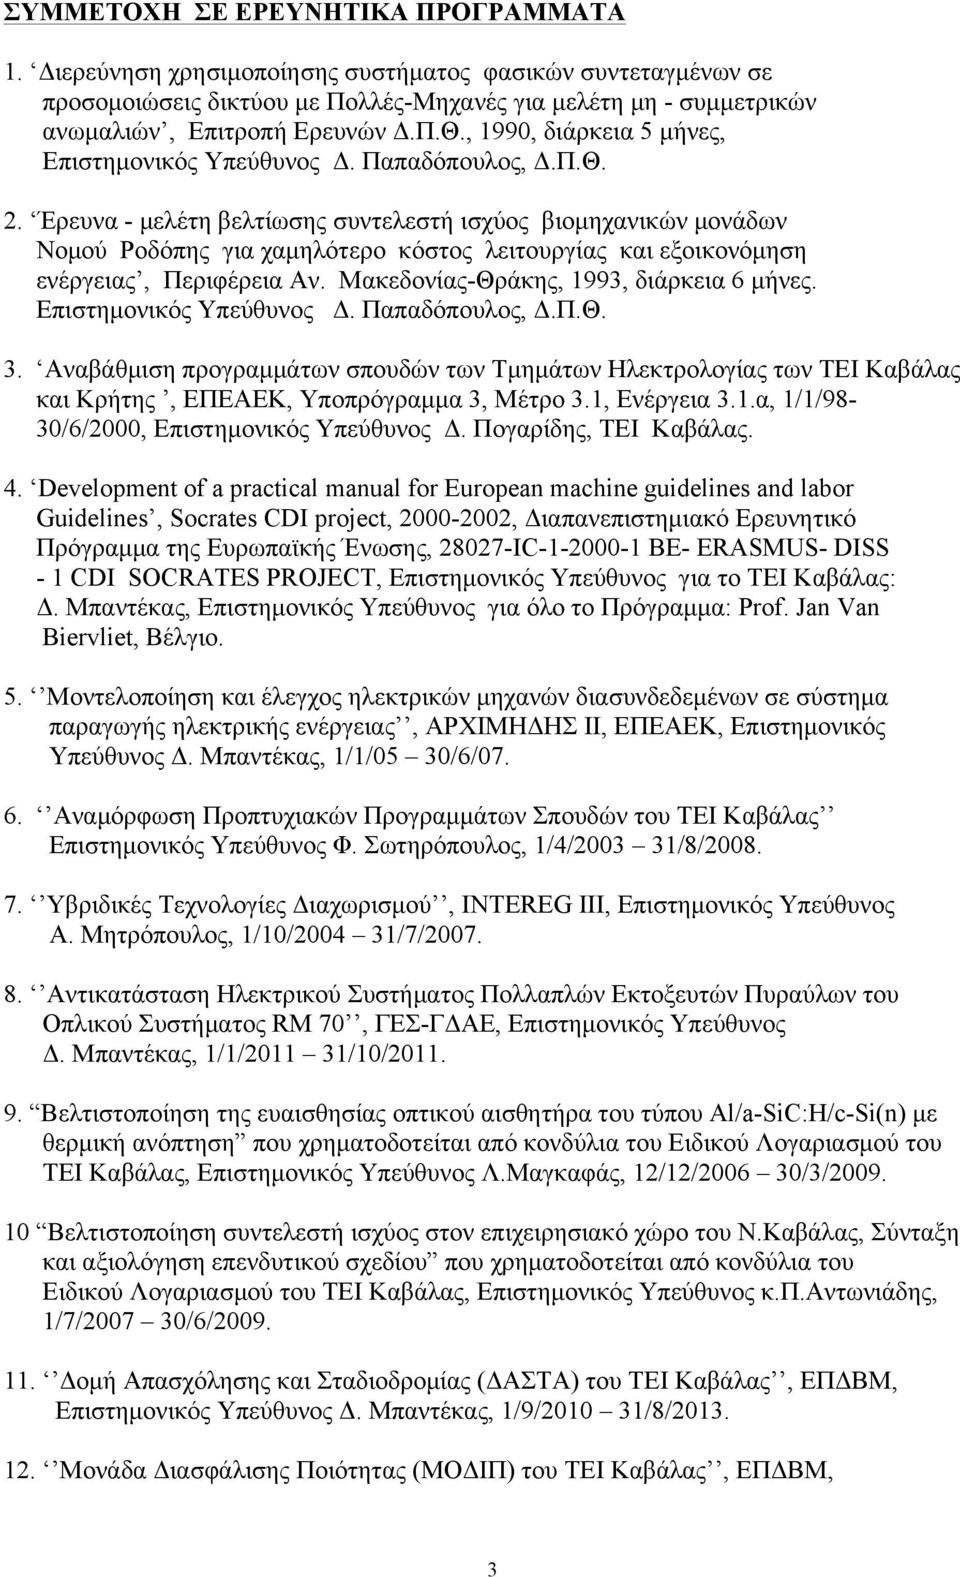 Έρευνα - µελέτη βελτίωσης συντελεστή ισχύος βιοµηχανικών µονάδων Νοµού Ροδόπης για χαµηλότερο κόστος λειτουργίας και εξοικονόµηση ενέργειας, Περιφέρεια Αν. Μακεδονίας-Θράκης, 1993, διάρκεια 6 µήνες.